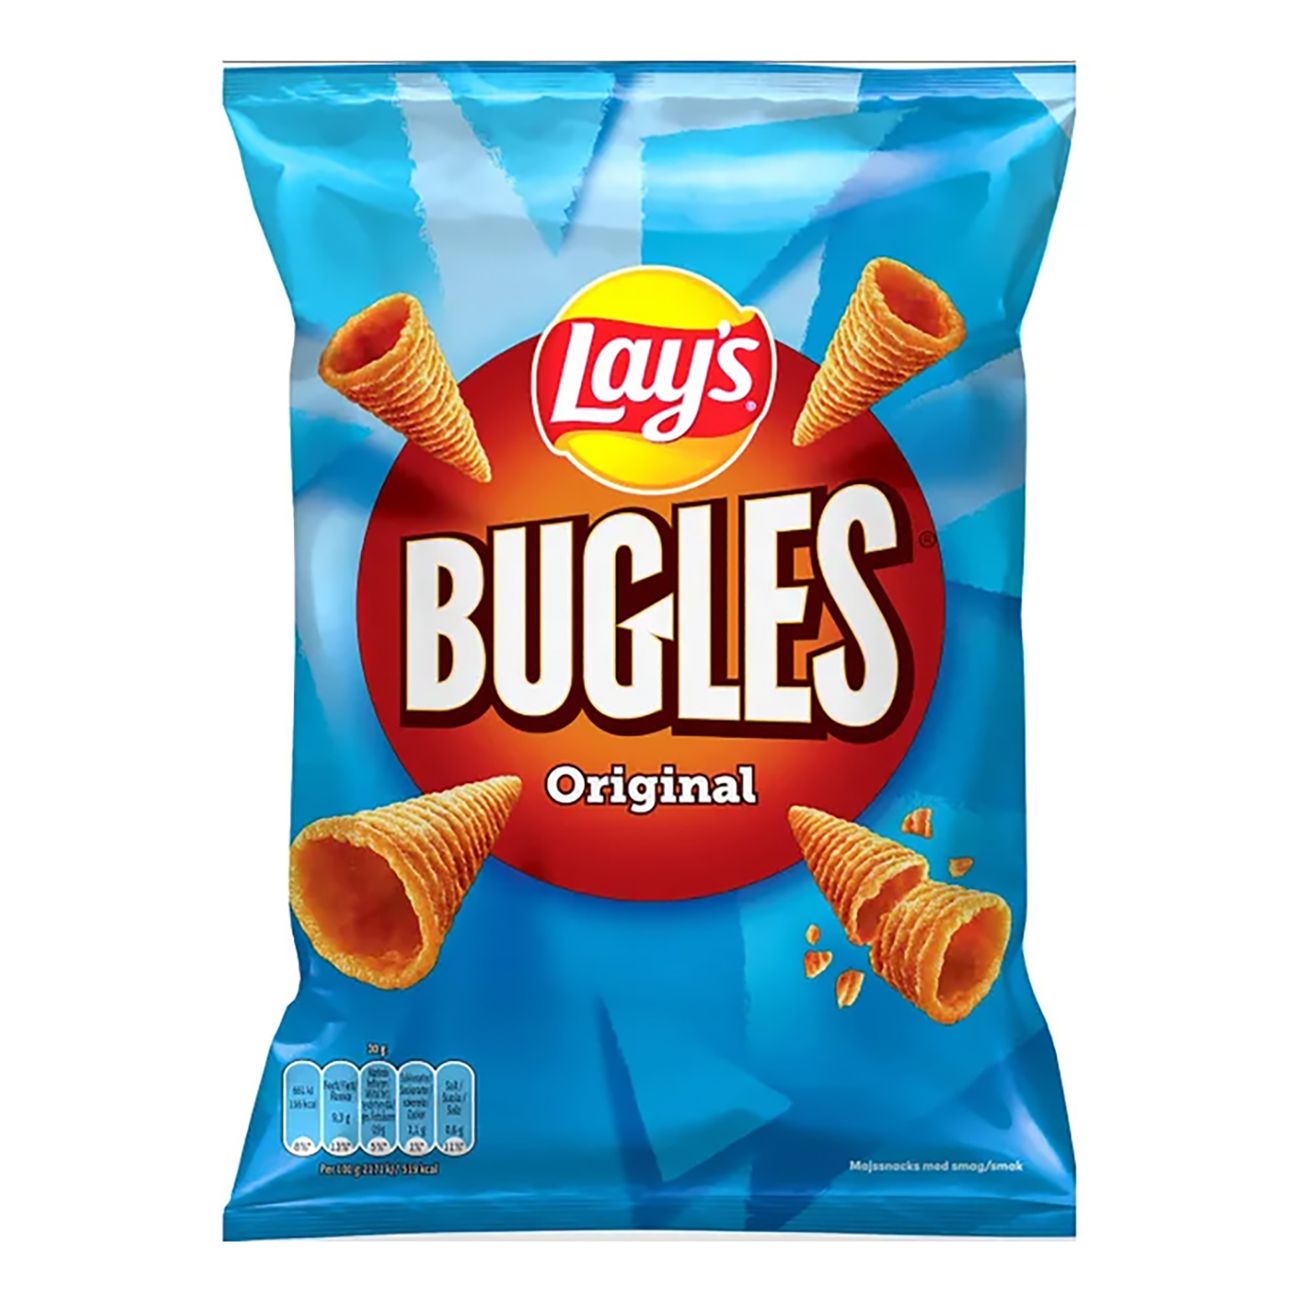 lays-bugles-original-92671-1